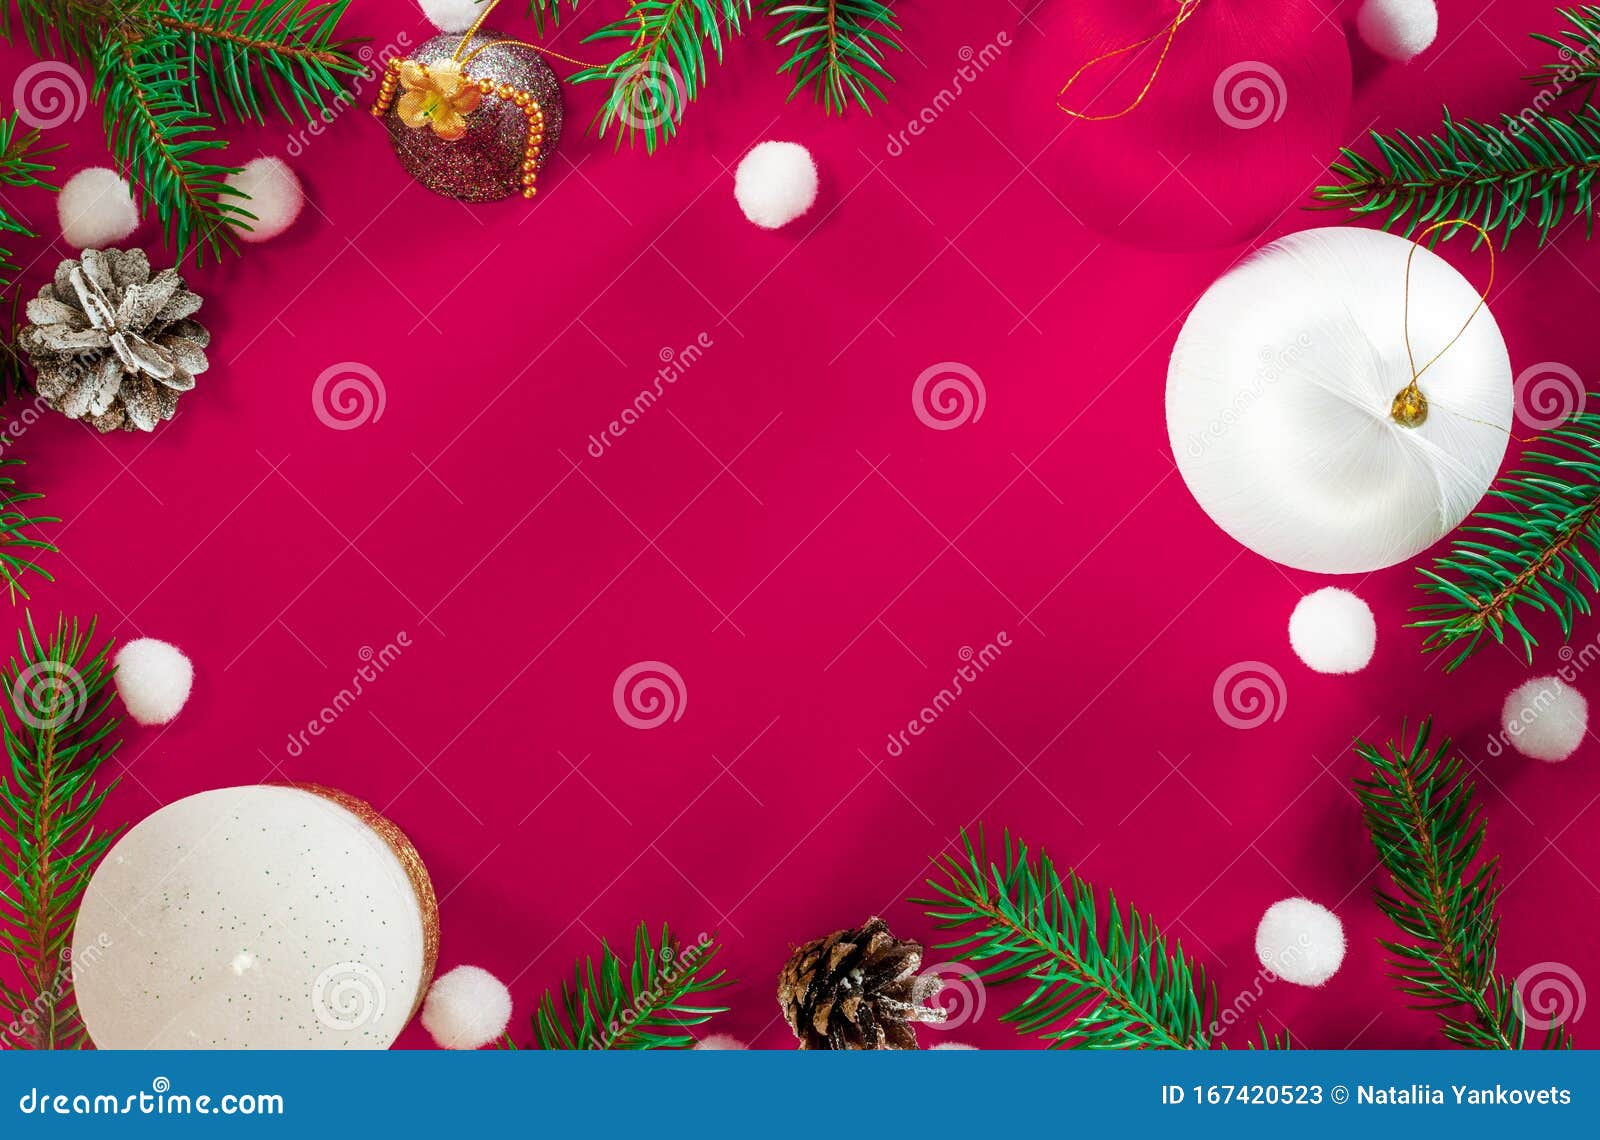 Giáng sinh đang đến gần, cần những Christmas Background đầy sáng tạo để làm mới không gian giải trí của bạn? Hãy đến với chúng tôi để nhận được những mẫu thiết kế đặc biệt, choáng ngợp với sắc đỏ và lá xanh náo nức. Hãy để giáng sinh tràn đầy một màu sắc mới của hình nền này nhé!